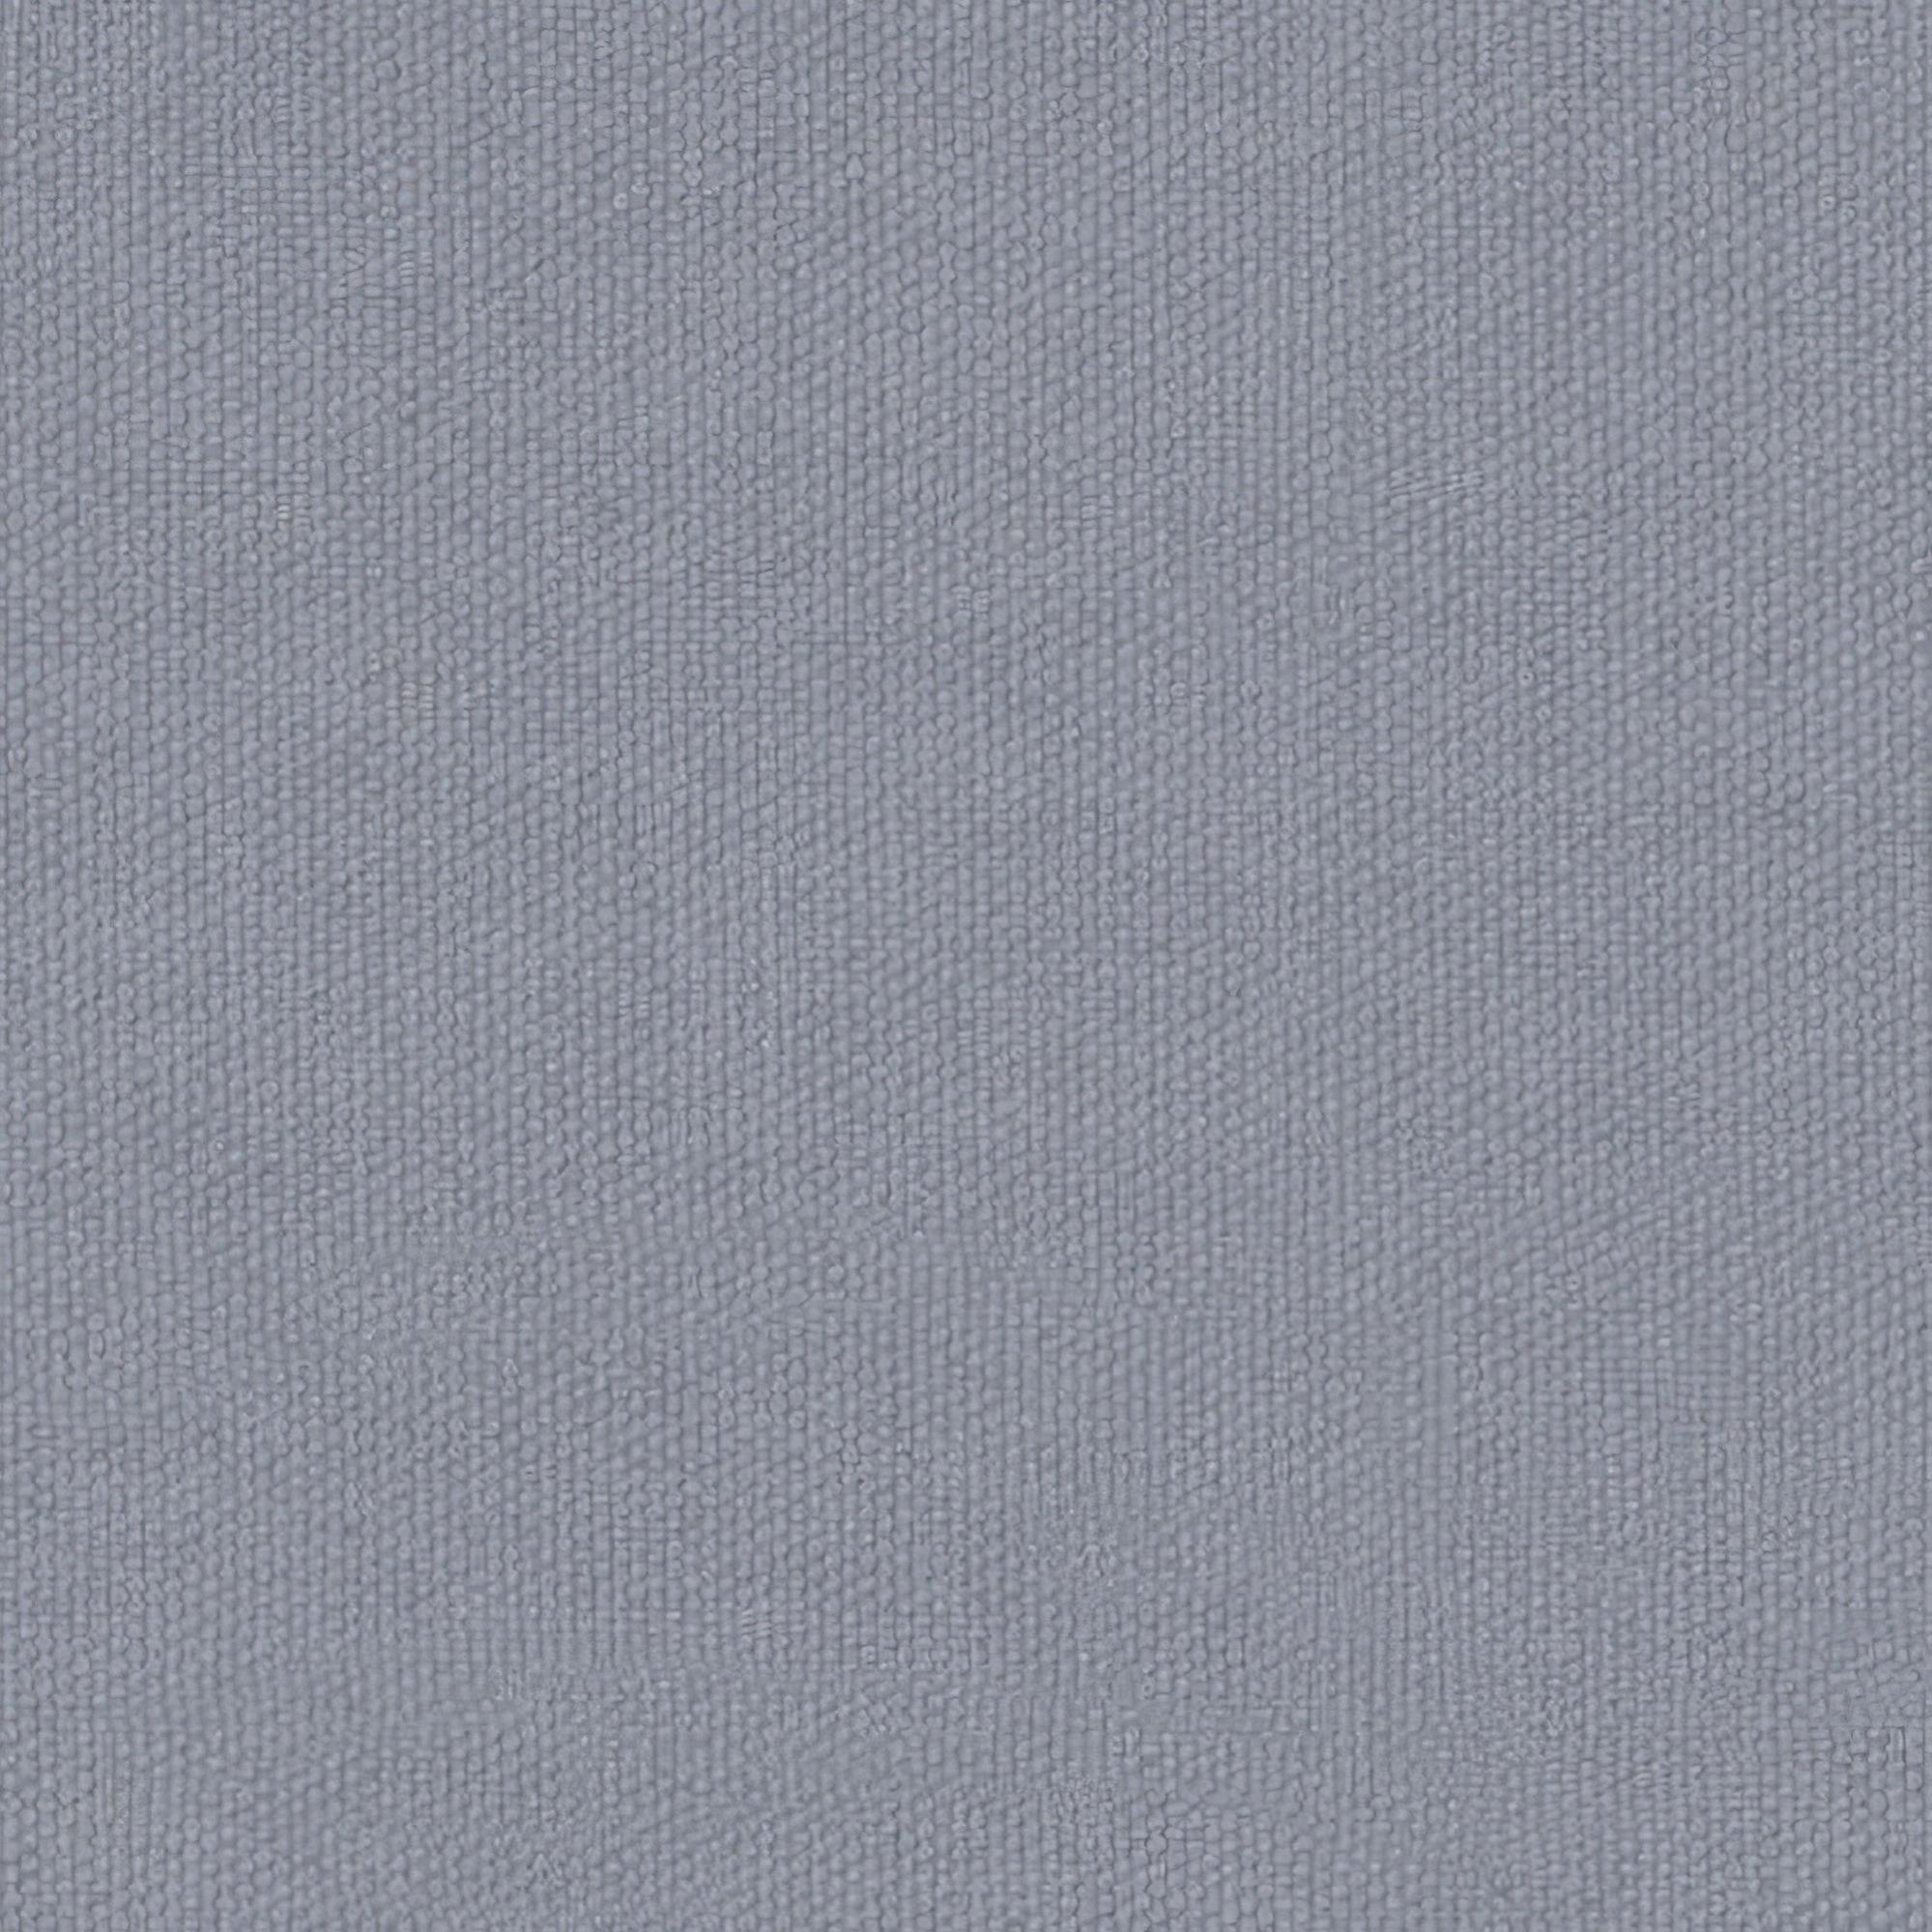 Tela al corte tapicería algodón dijon azul ancho 140 cm